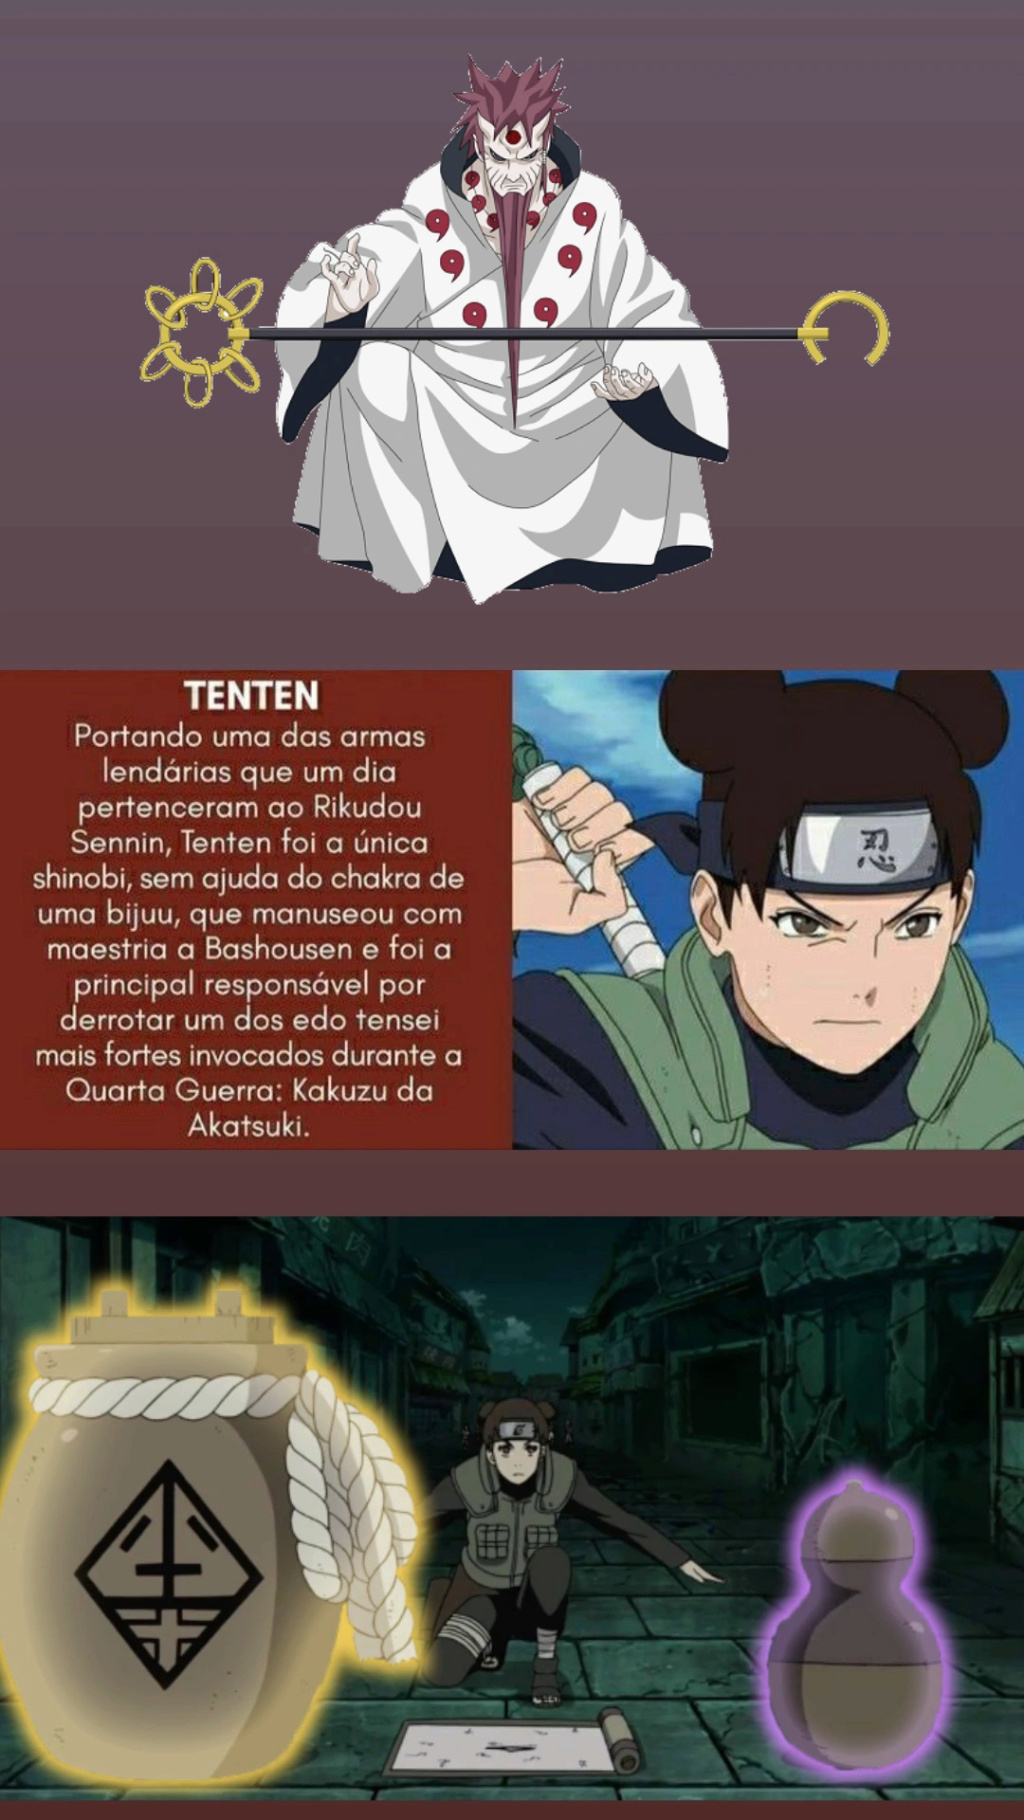 [Tópico repetitivo] Quais personagens femininos mais poderosos de Naruto? - Página 9 Img_2195